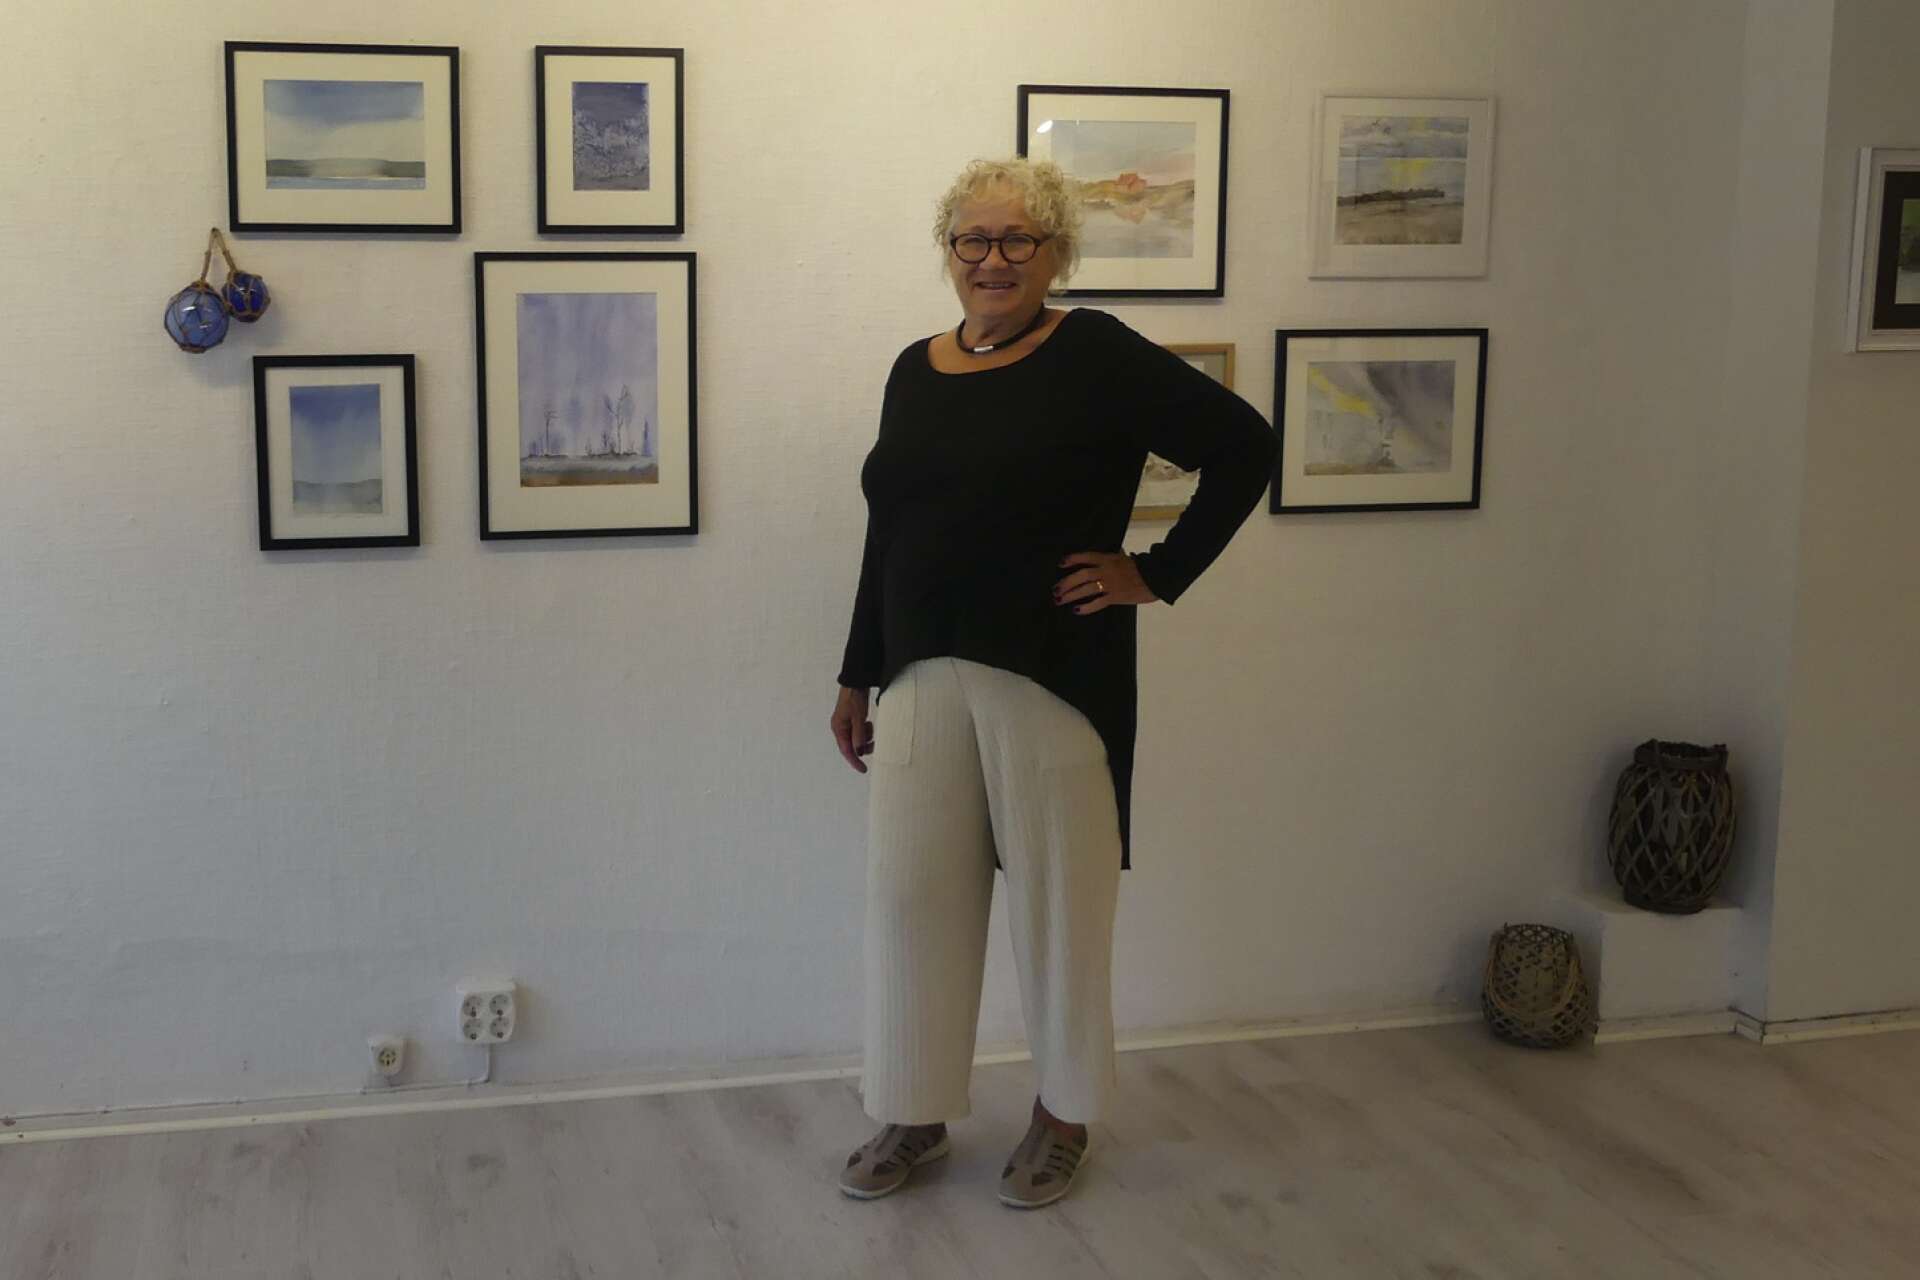 Konstnären Charlotte Payne Skoog från Åmål startar höstens utställningar på Galleri 2 med att hänga upp sin akvarellkonst.